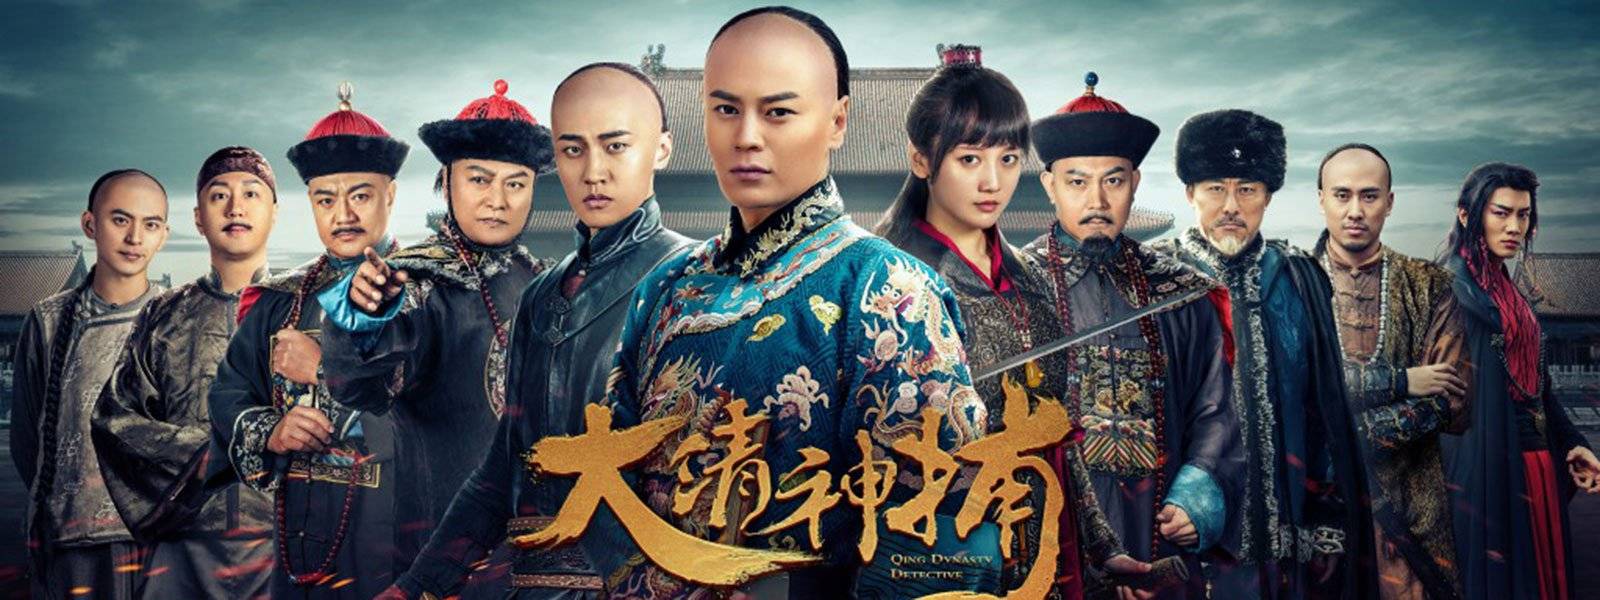 Xem Phim Thần Bổ Đại Thanh - Kì 2, Qing Dynasty Detective 2018